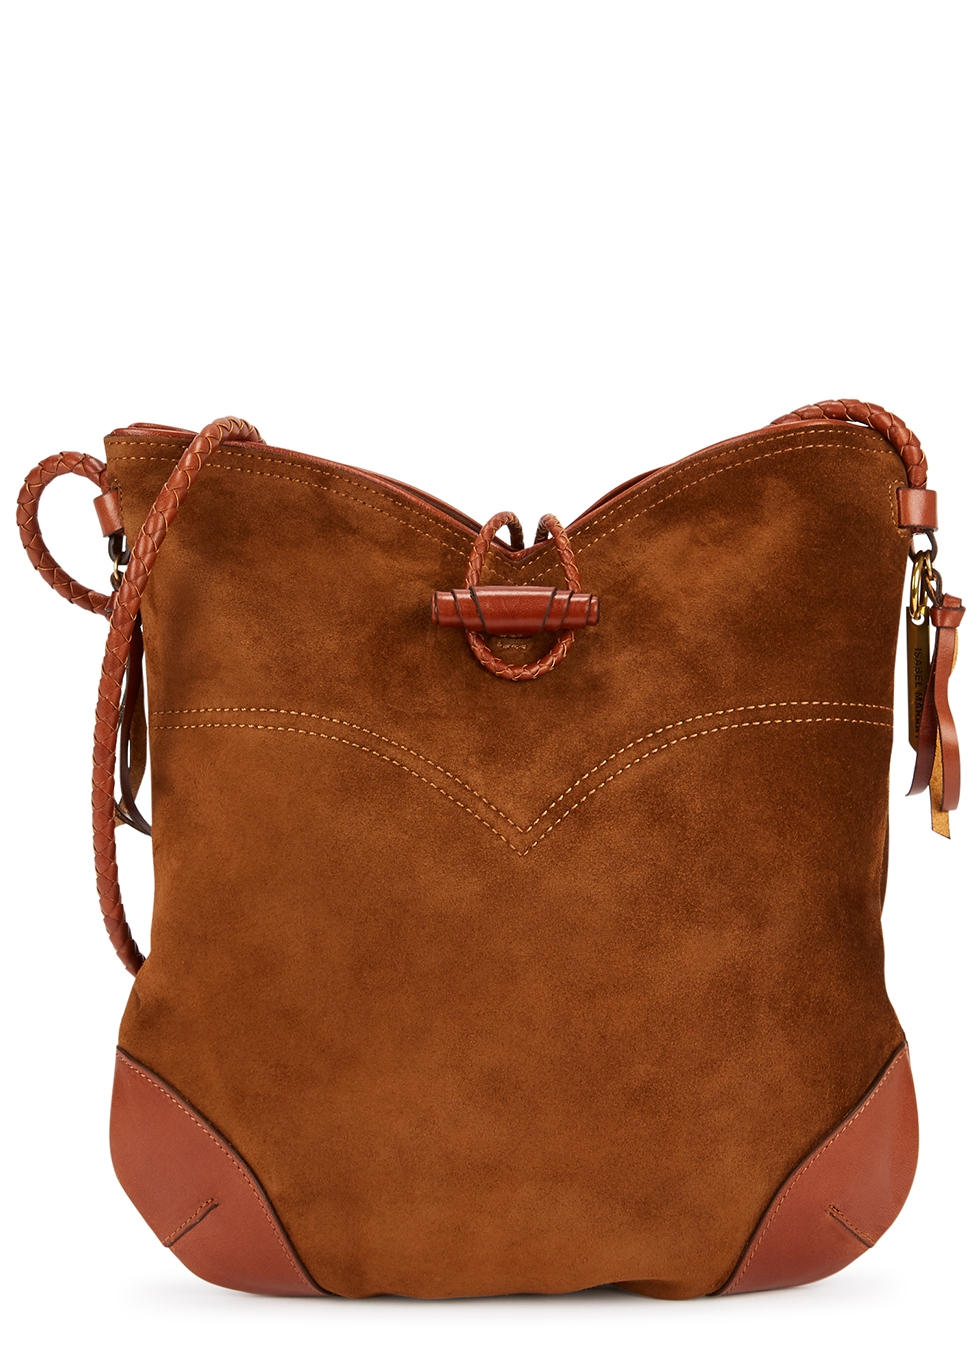 Tyag brown suede shoulder bag